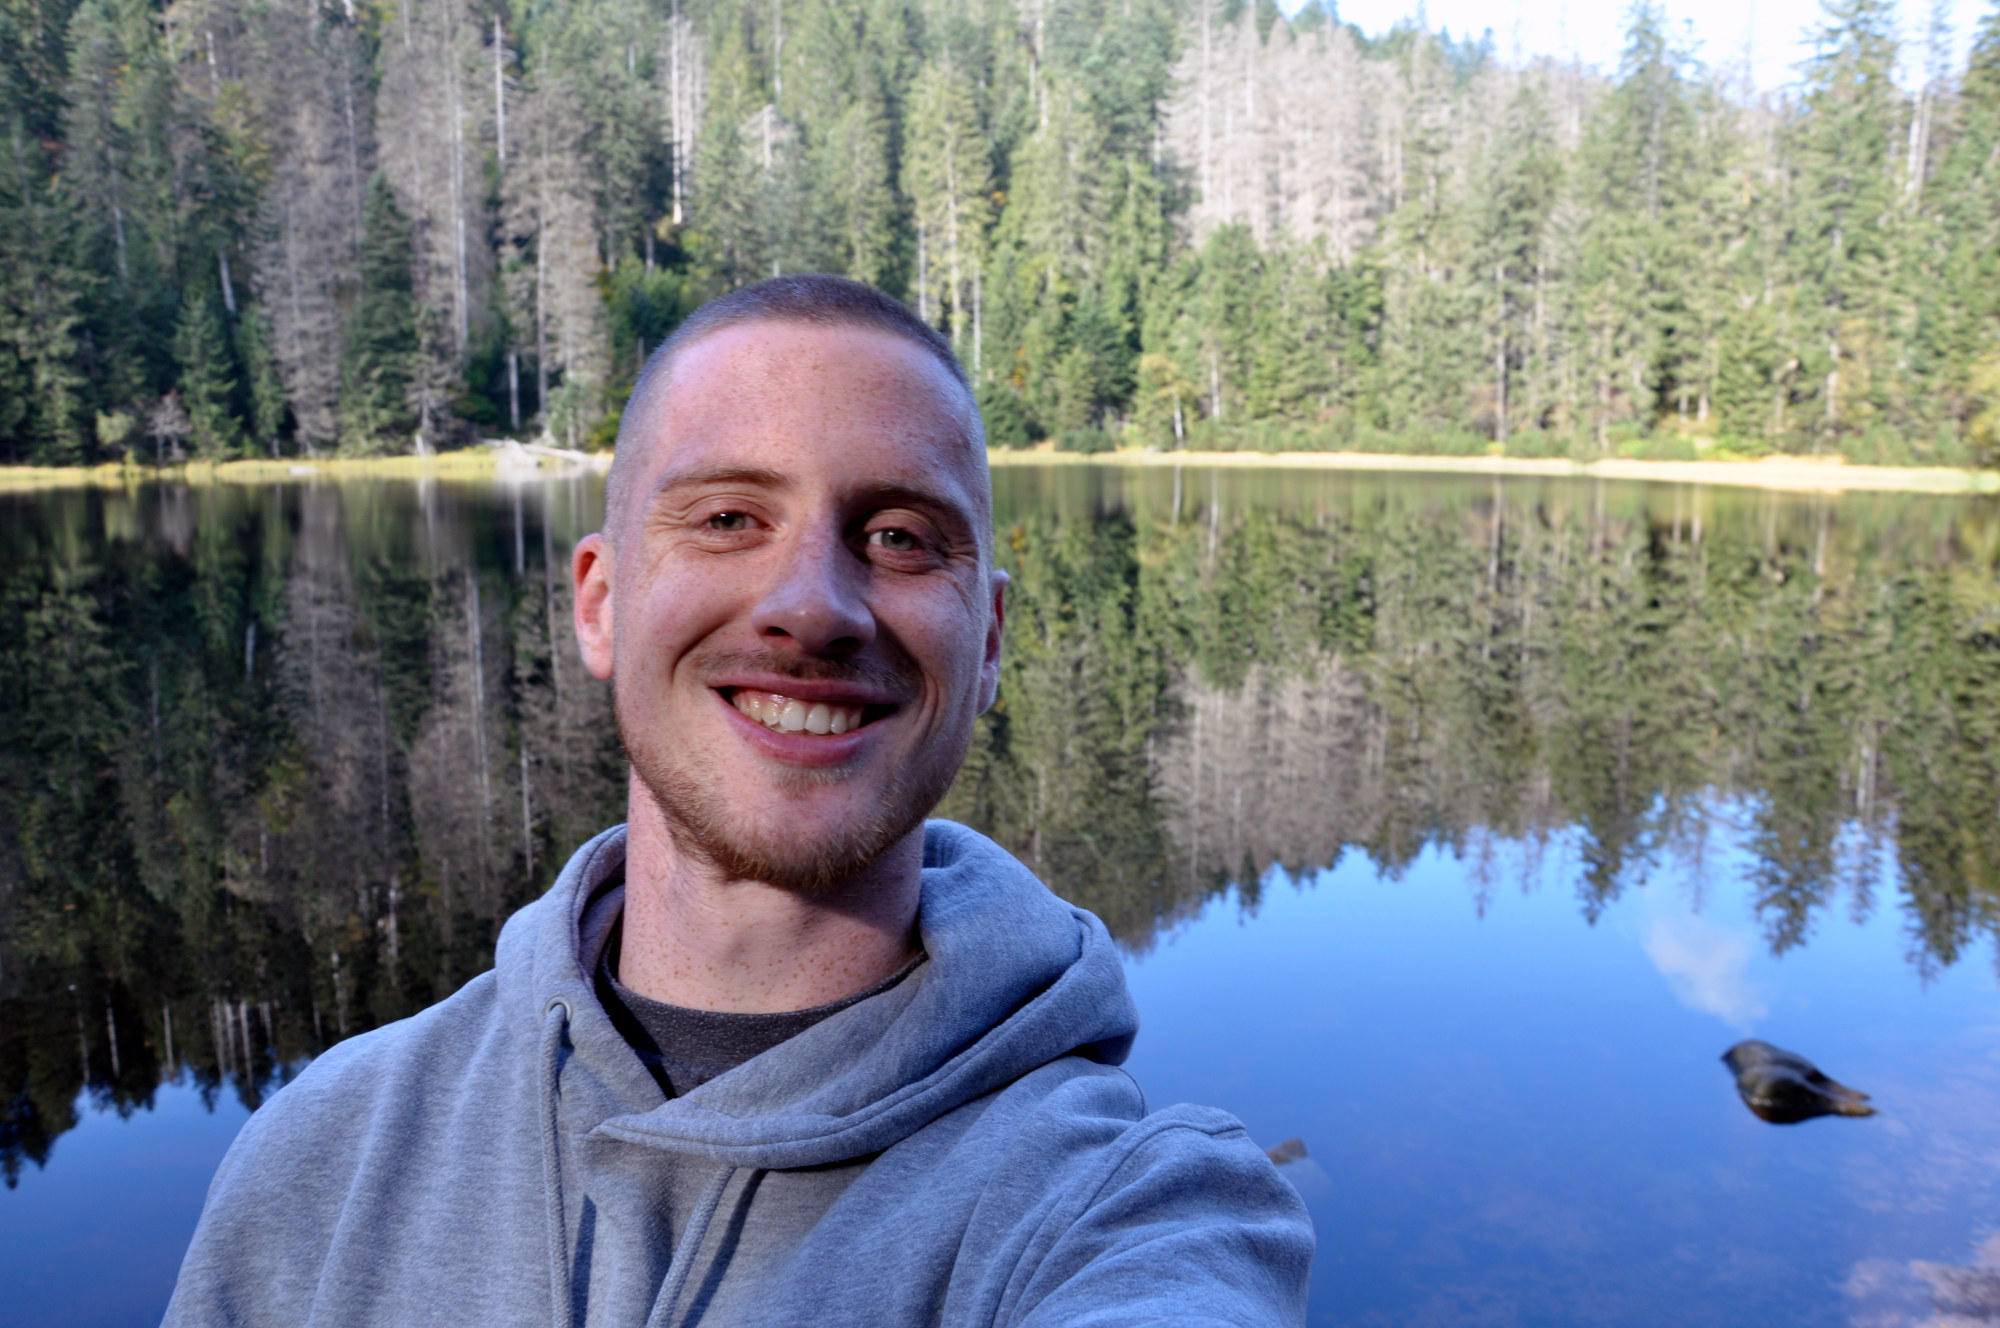 Selfie von Blogger Oliver vor dem Wilden See: Im Hintergrund der ruhig daliegende See mit der Umrahmung durch dichten Nadelwald. Davor ein in die Kamera grinsender junger Mann mit einem grauen Kapuzenpullover.